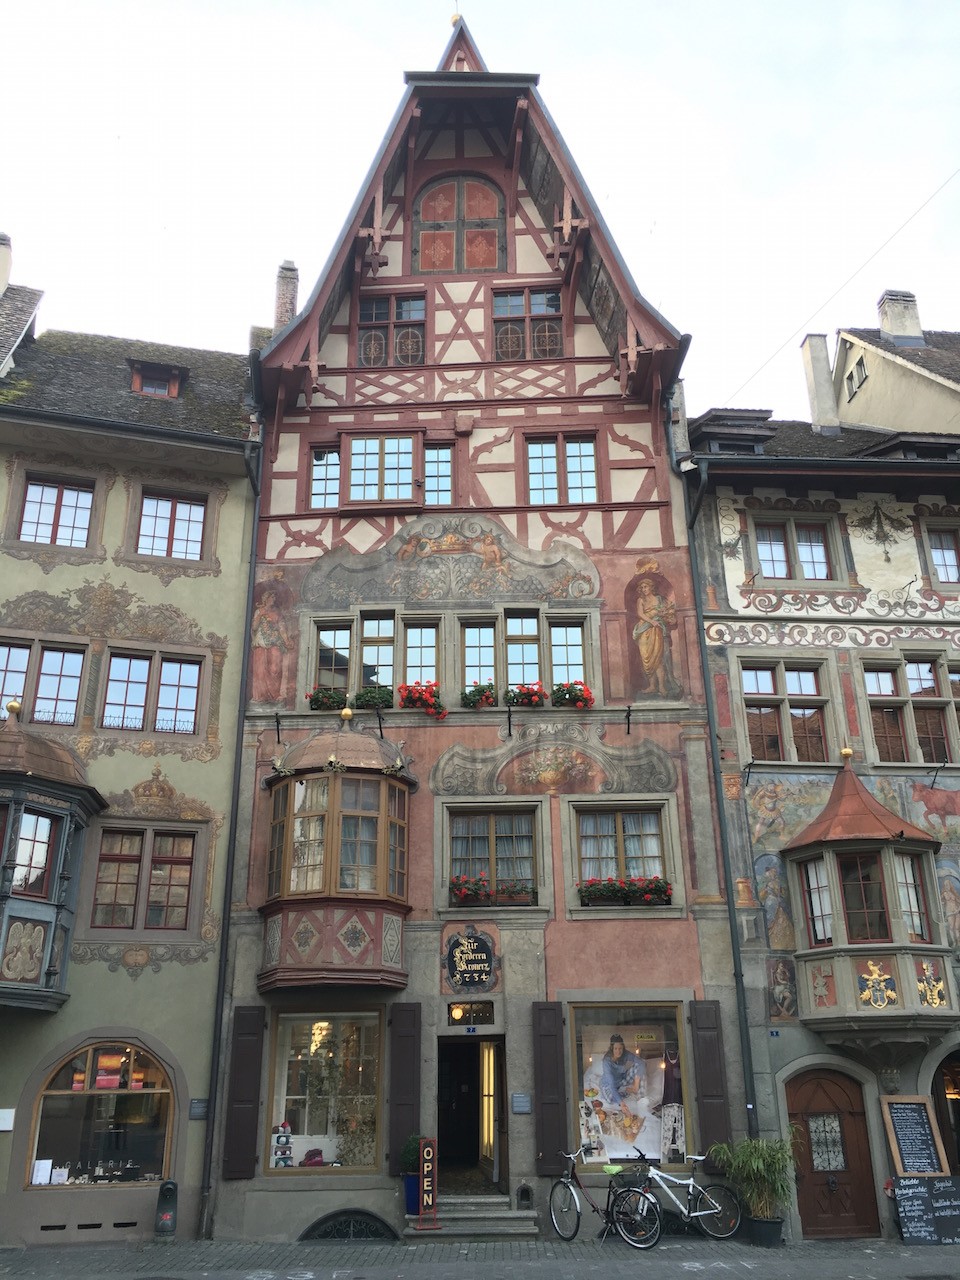 cidade medieval fachadas coloridas